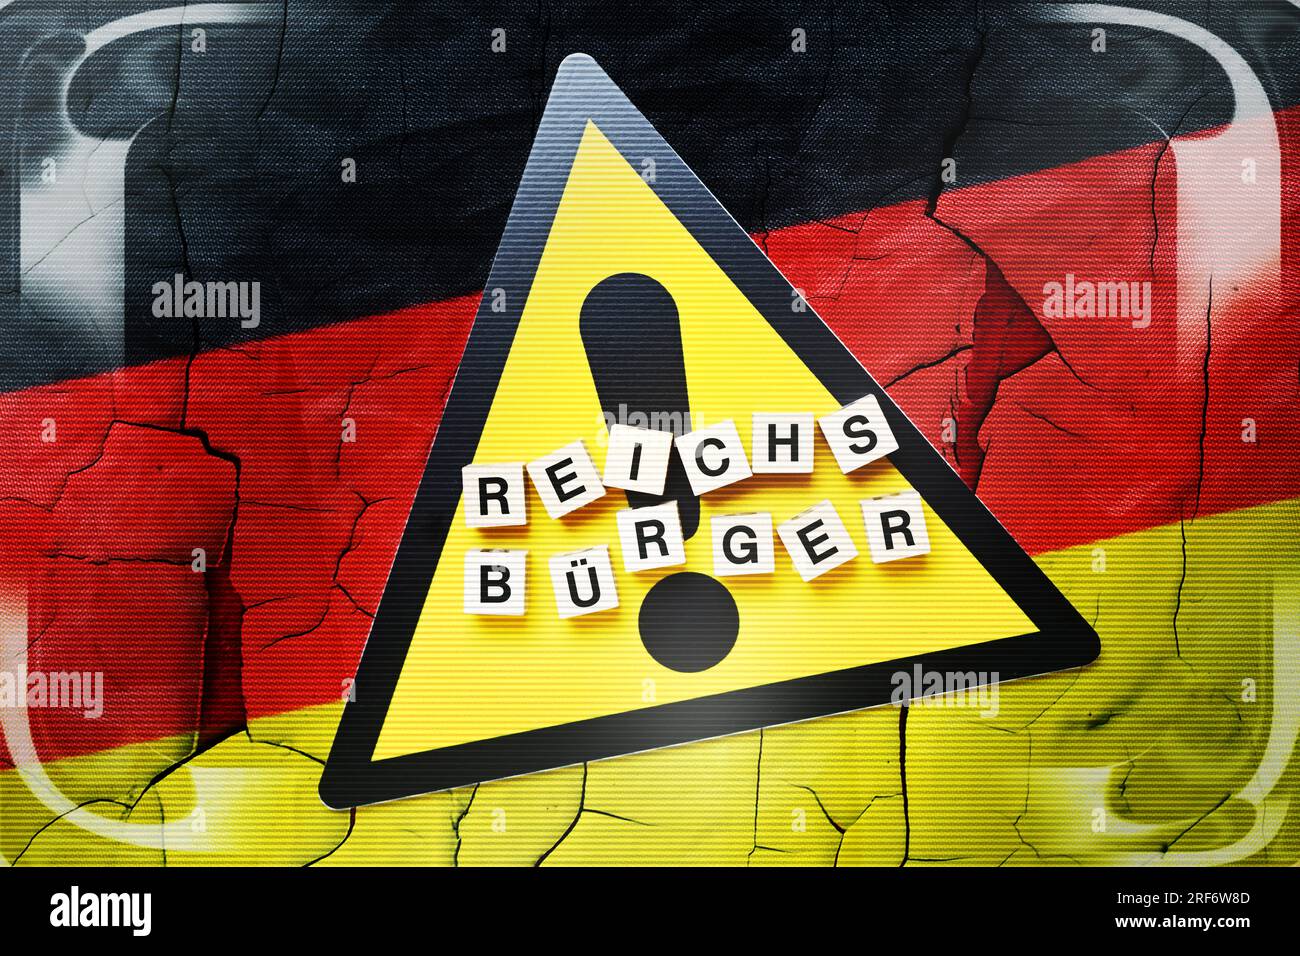 Buchstabenwürfel formen das Wort Reichsbürger auf Gefahrenschild und Deutschlandfahne Stock Photo